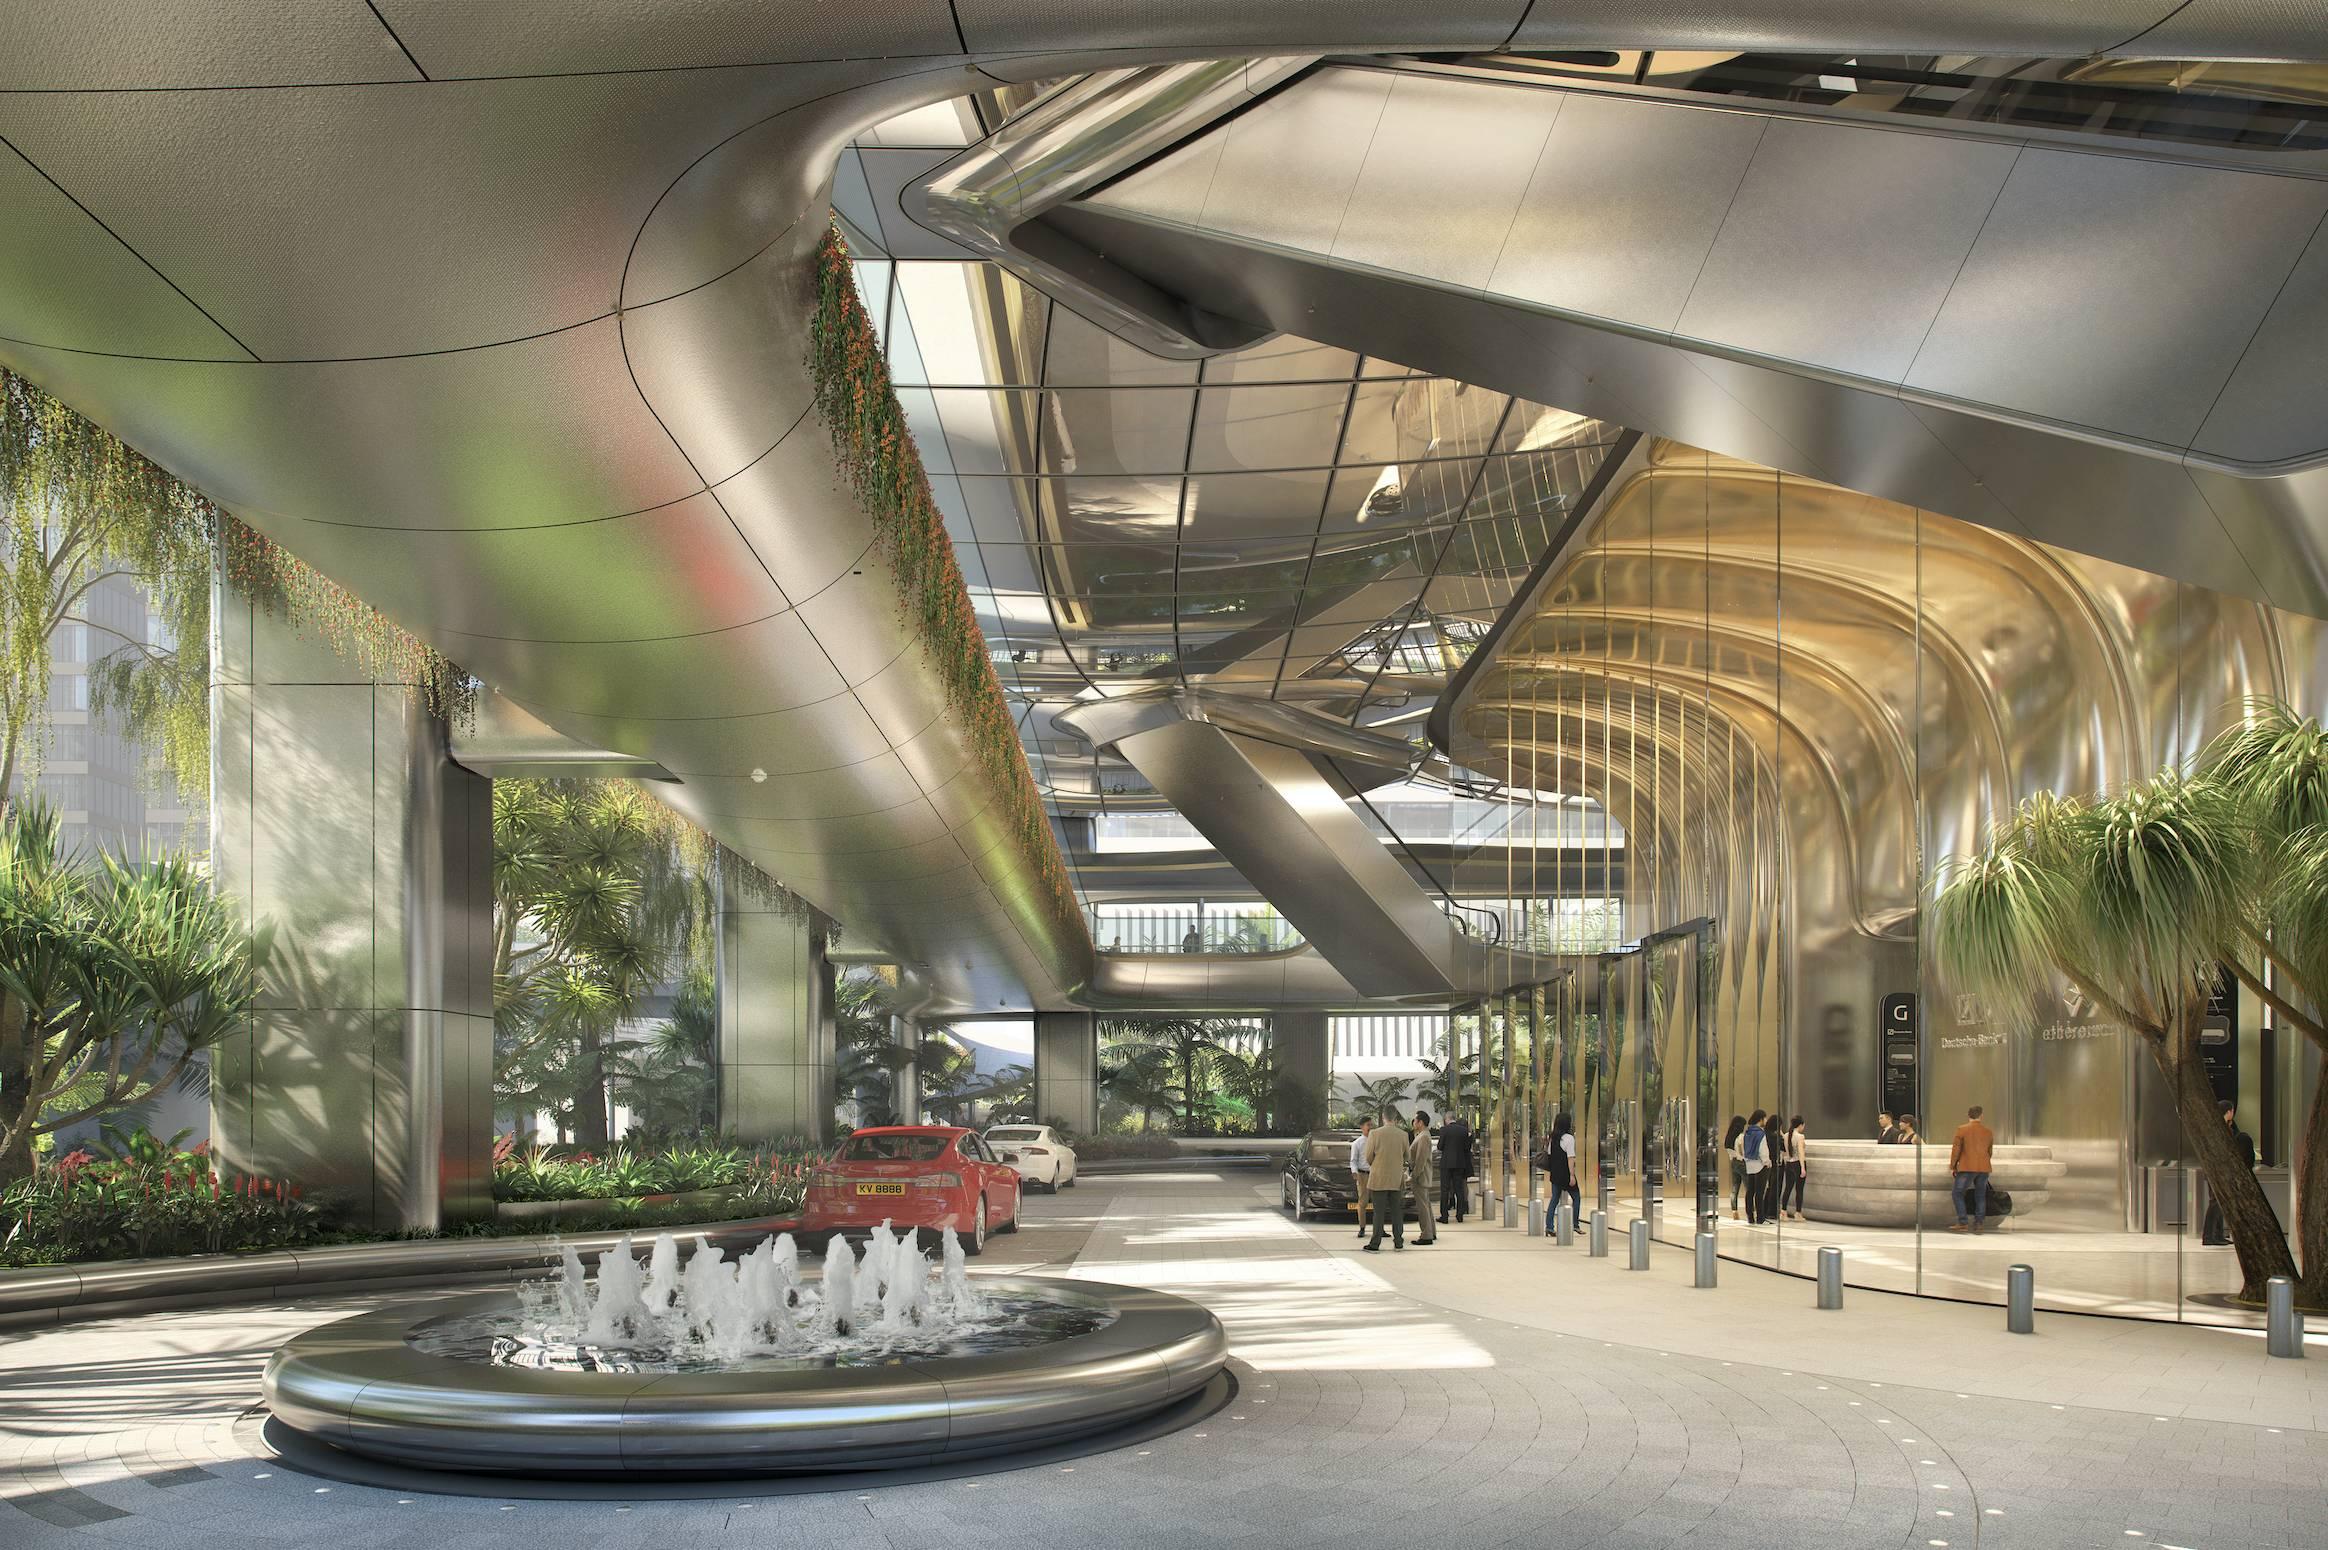 فن العمارة - شركة زها حديد تنفذ مشاريع جديدة في 2020.